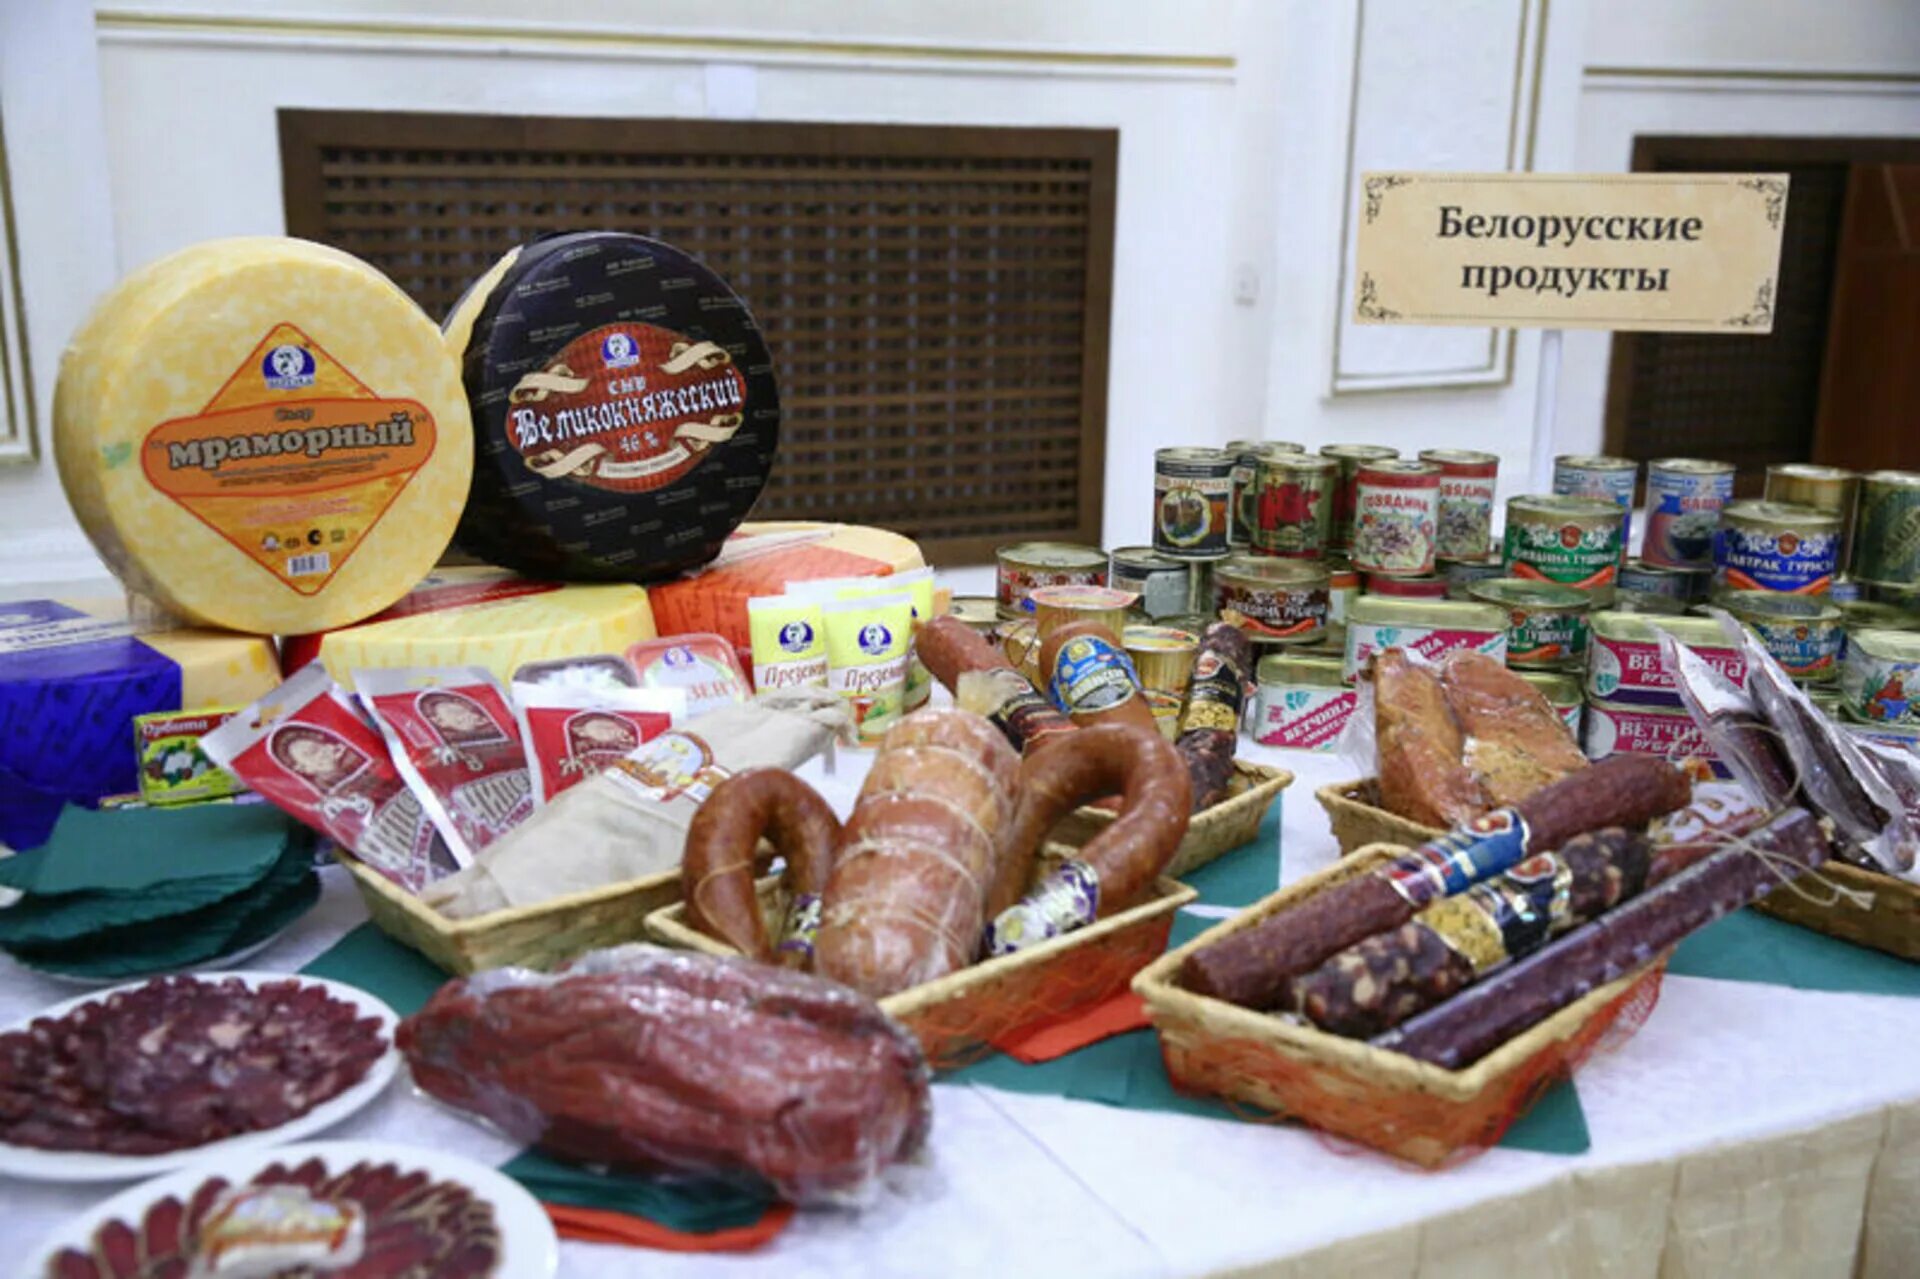 Белорусские продукты. Белорусские товары. Белорусские продукты товар. Белорусская продукция продукты.